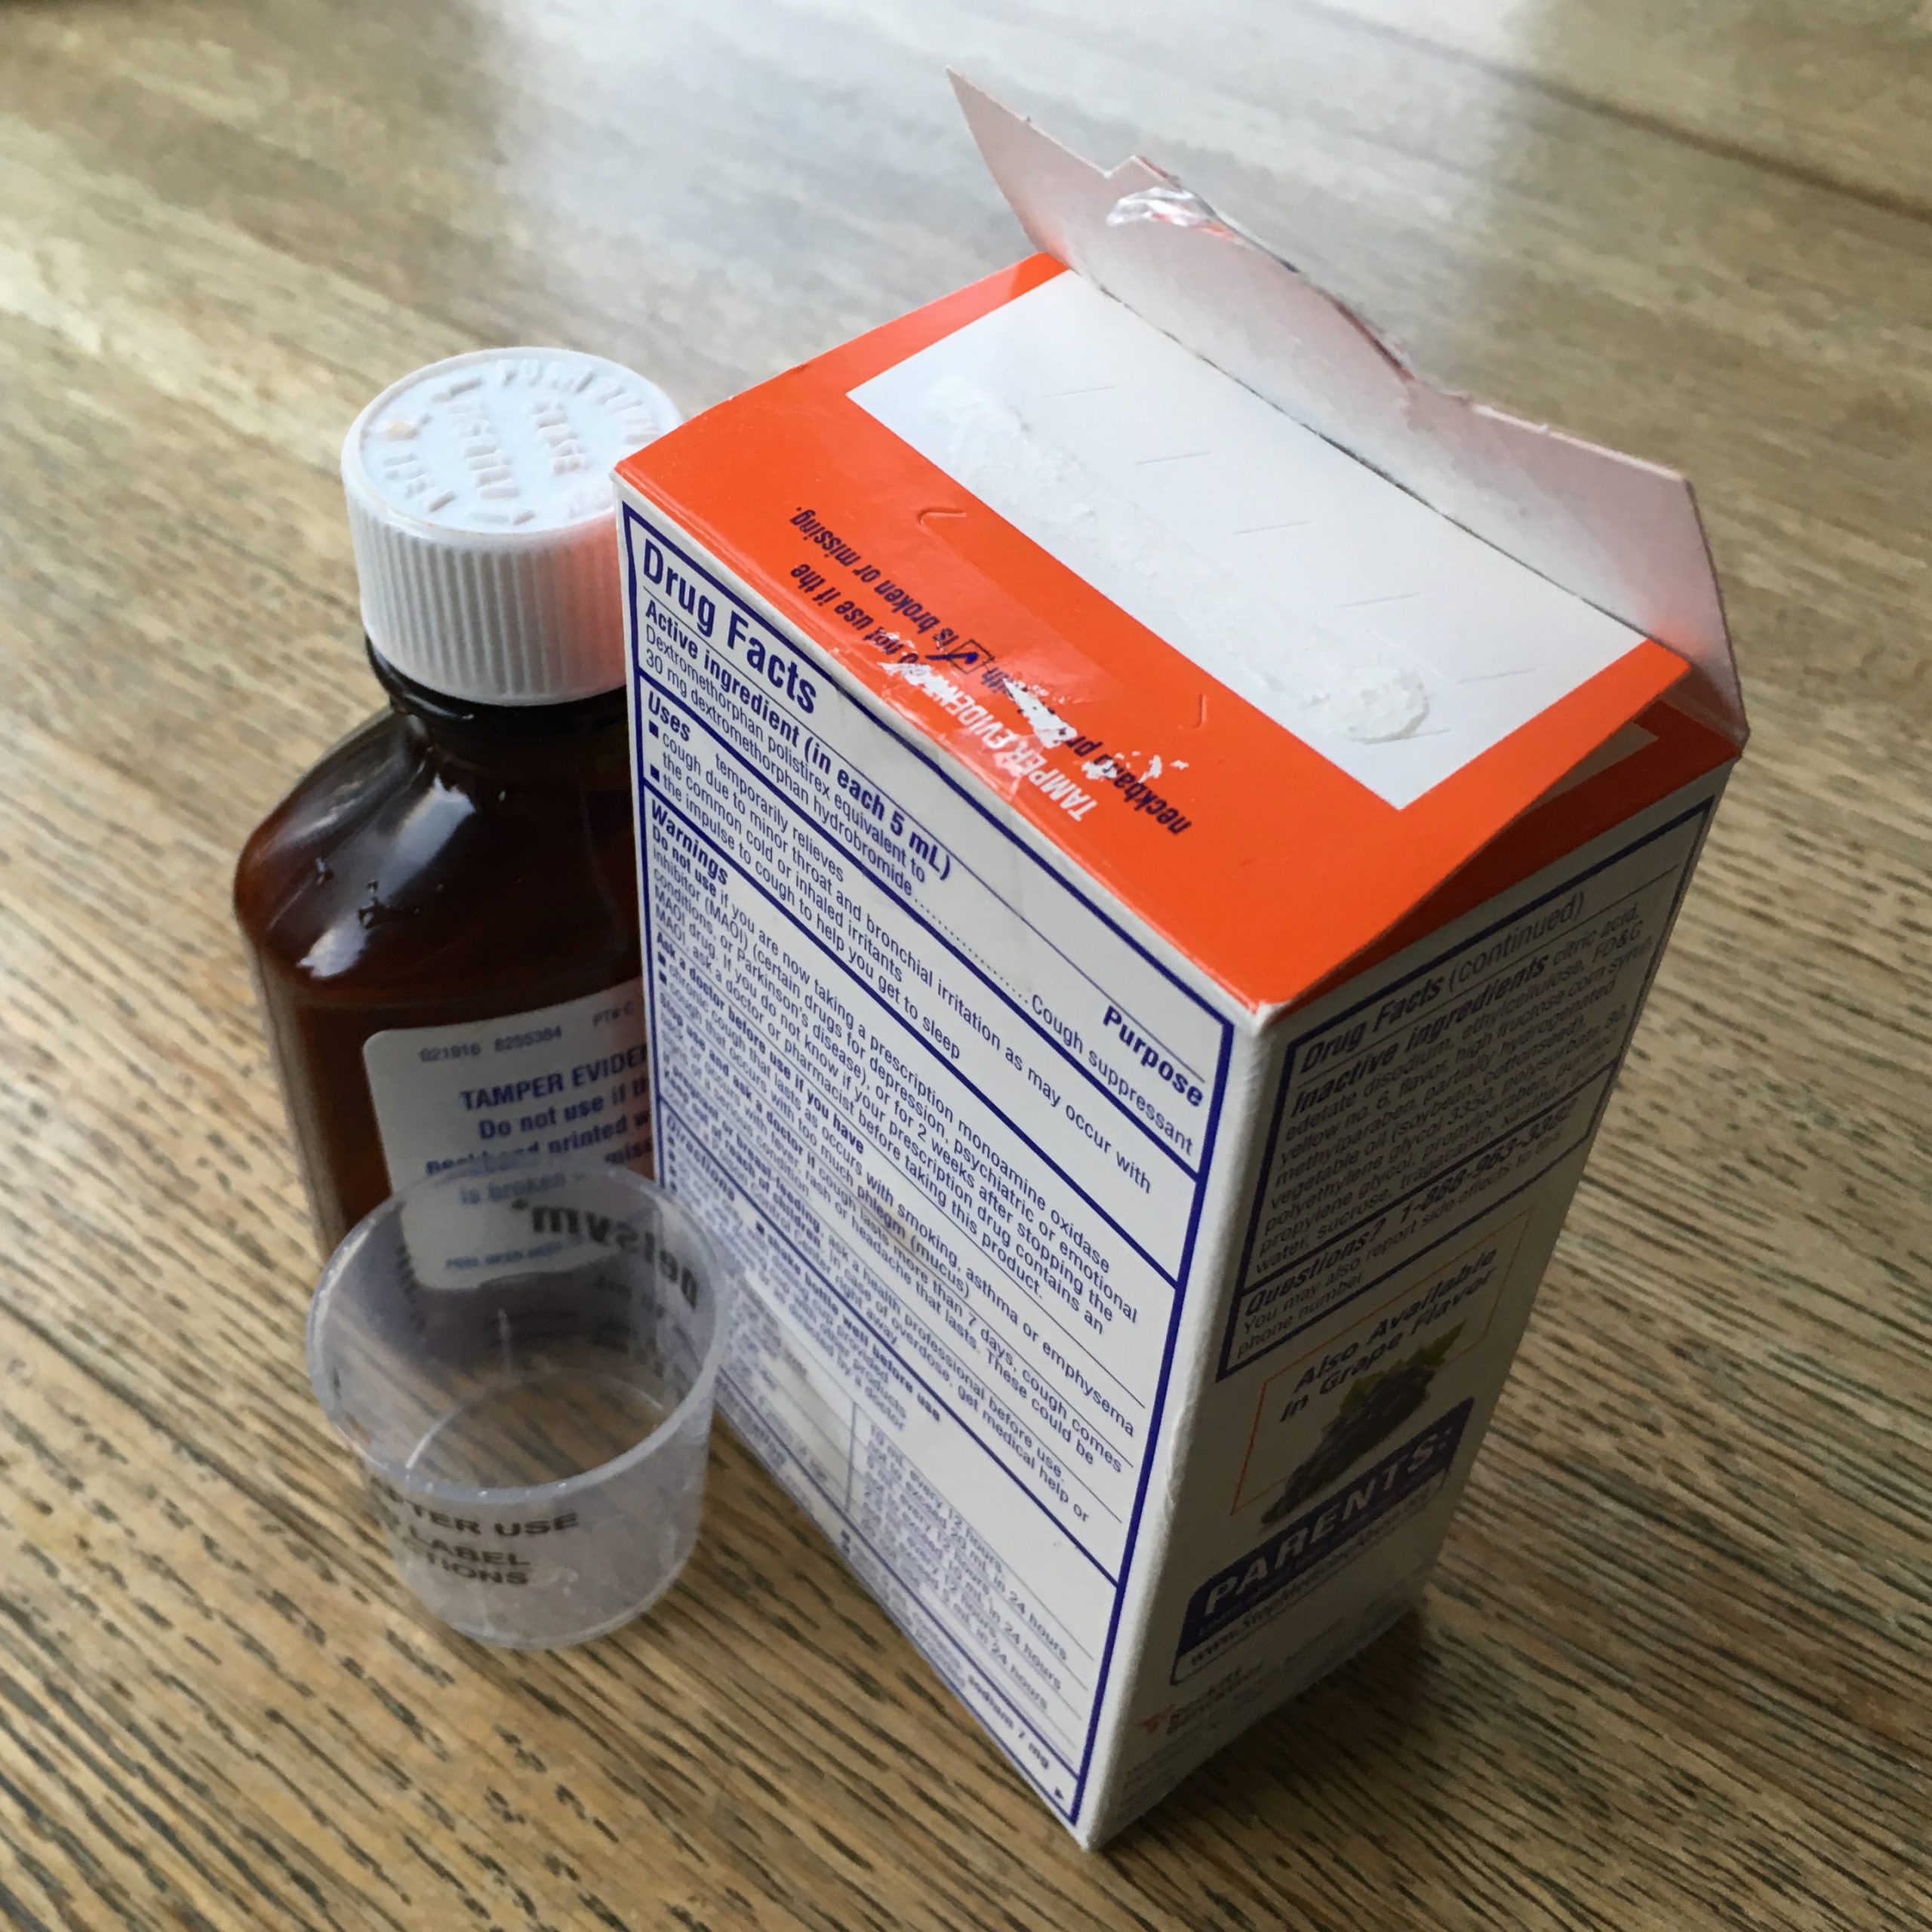 Cough Medicine Safe For Parkinsons Patients